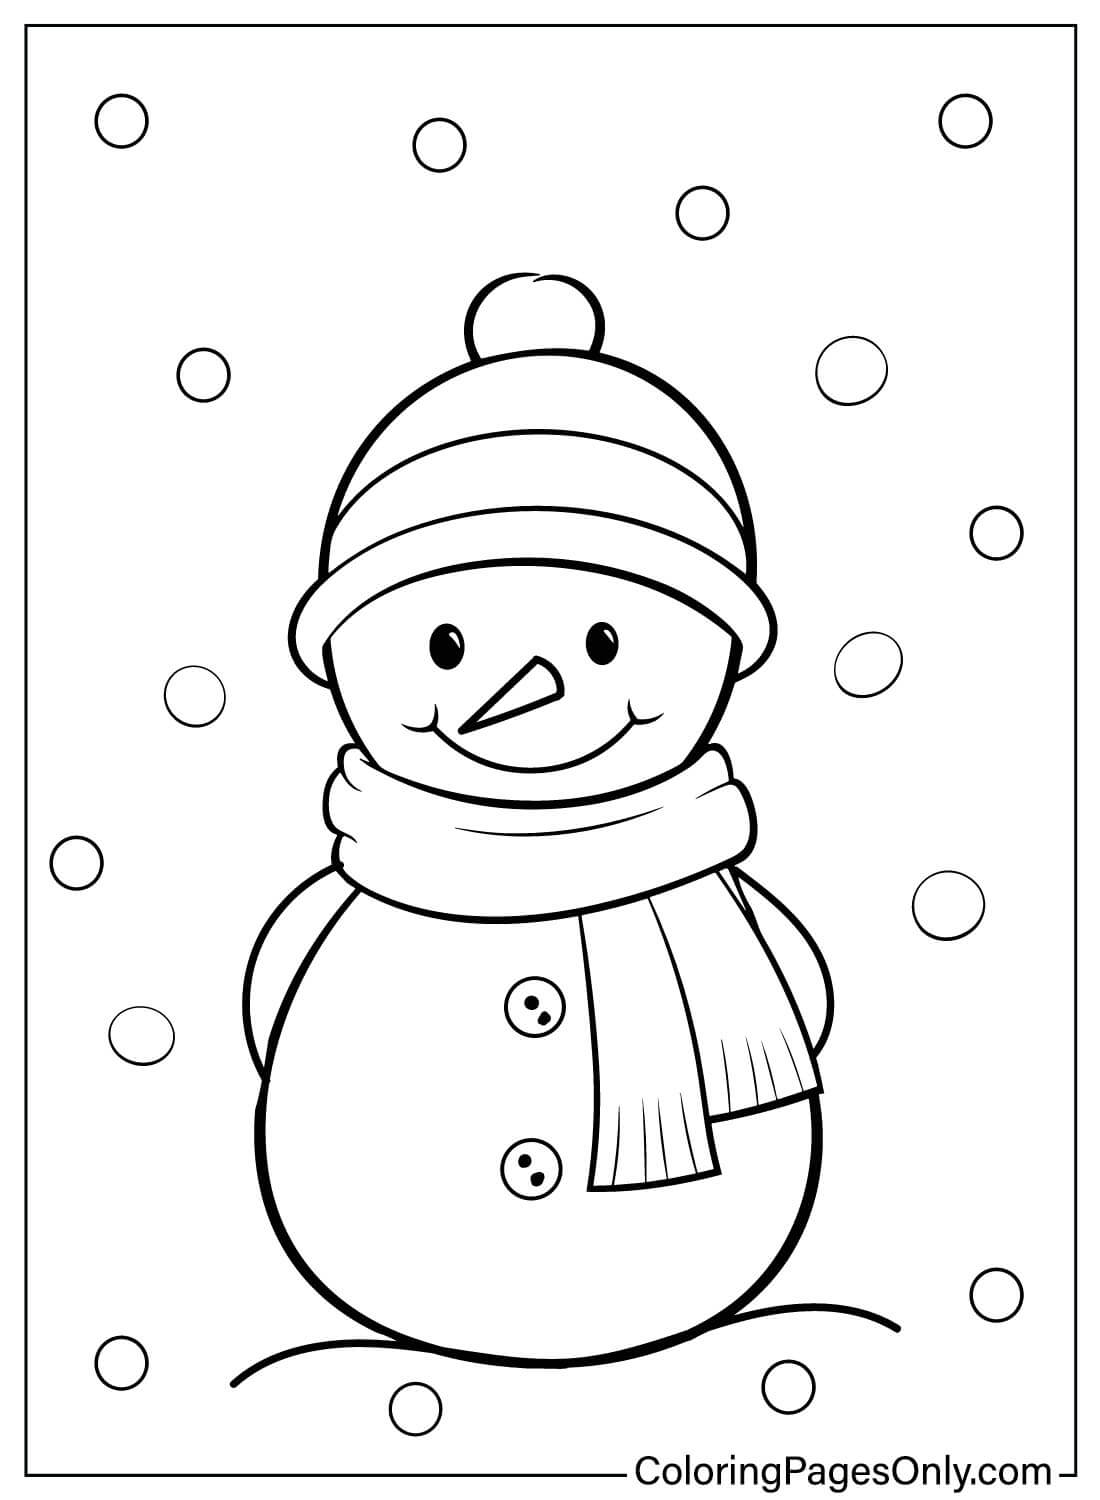 Desenhos para colorir de boneco de neve para crianças